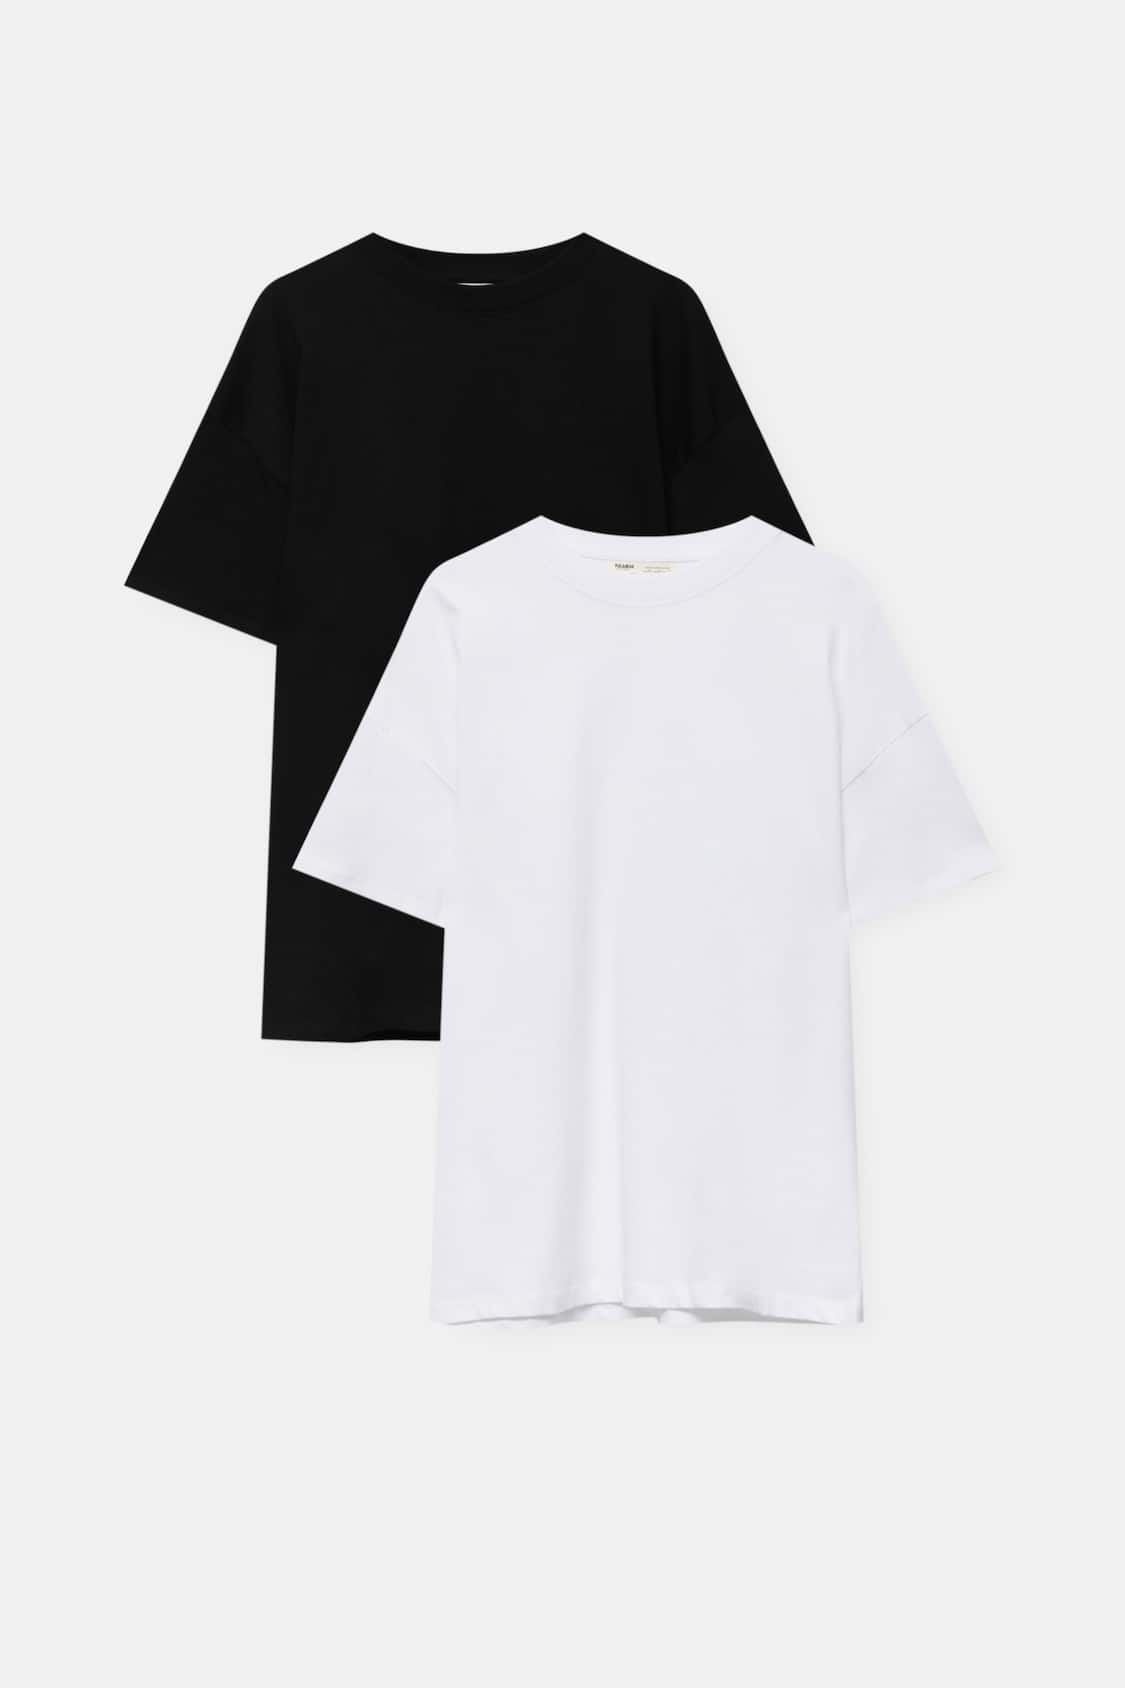 Camiseta para mujer, paquete de 2 camisetas de manga corta para mujer,  color negro y blanco, Blanco